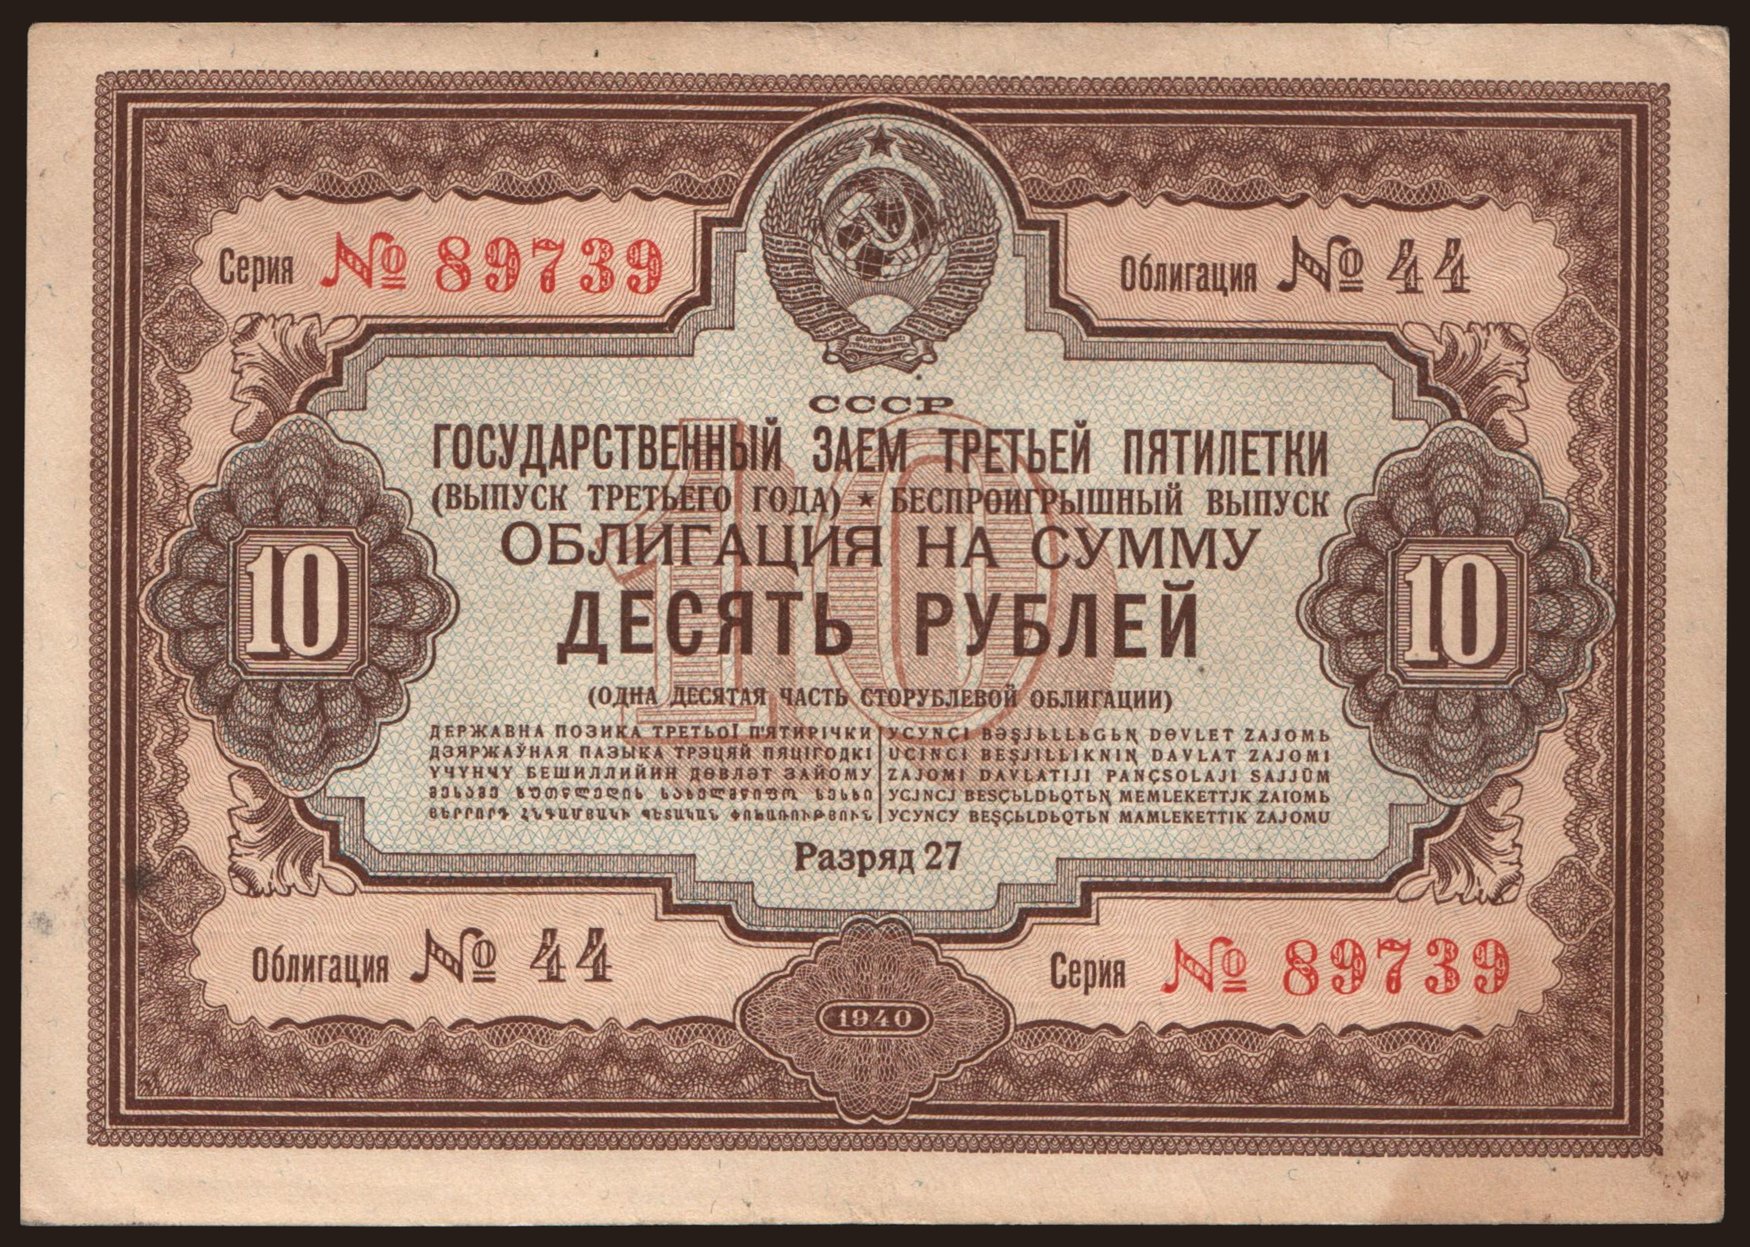 Gosudarstvennyj zaem, 10 rubel, 1940